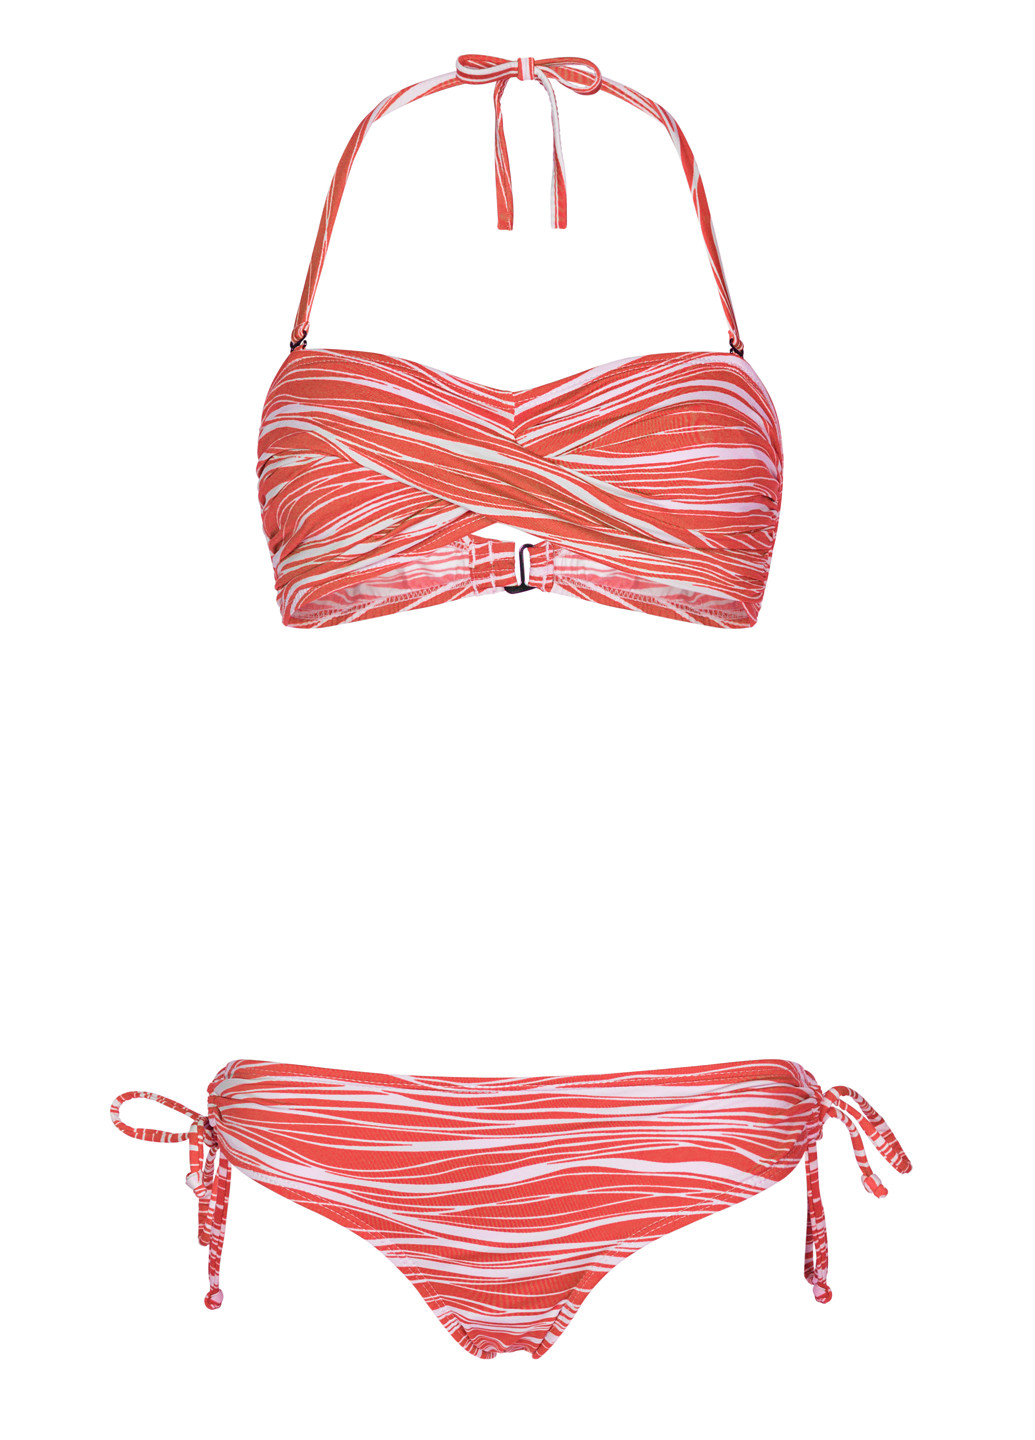 Червоний літній купальник бандо в полоску роздільний, бікіні, бандо, халтер Beach Panties